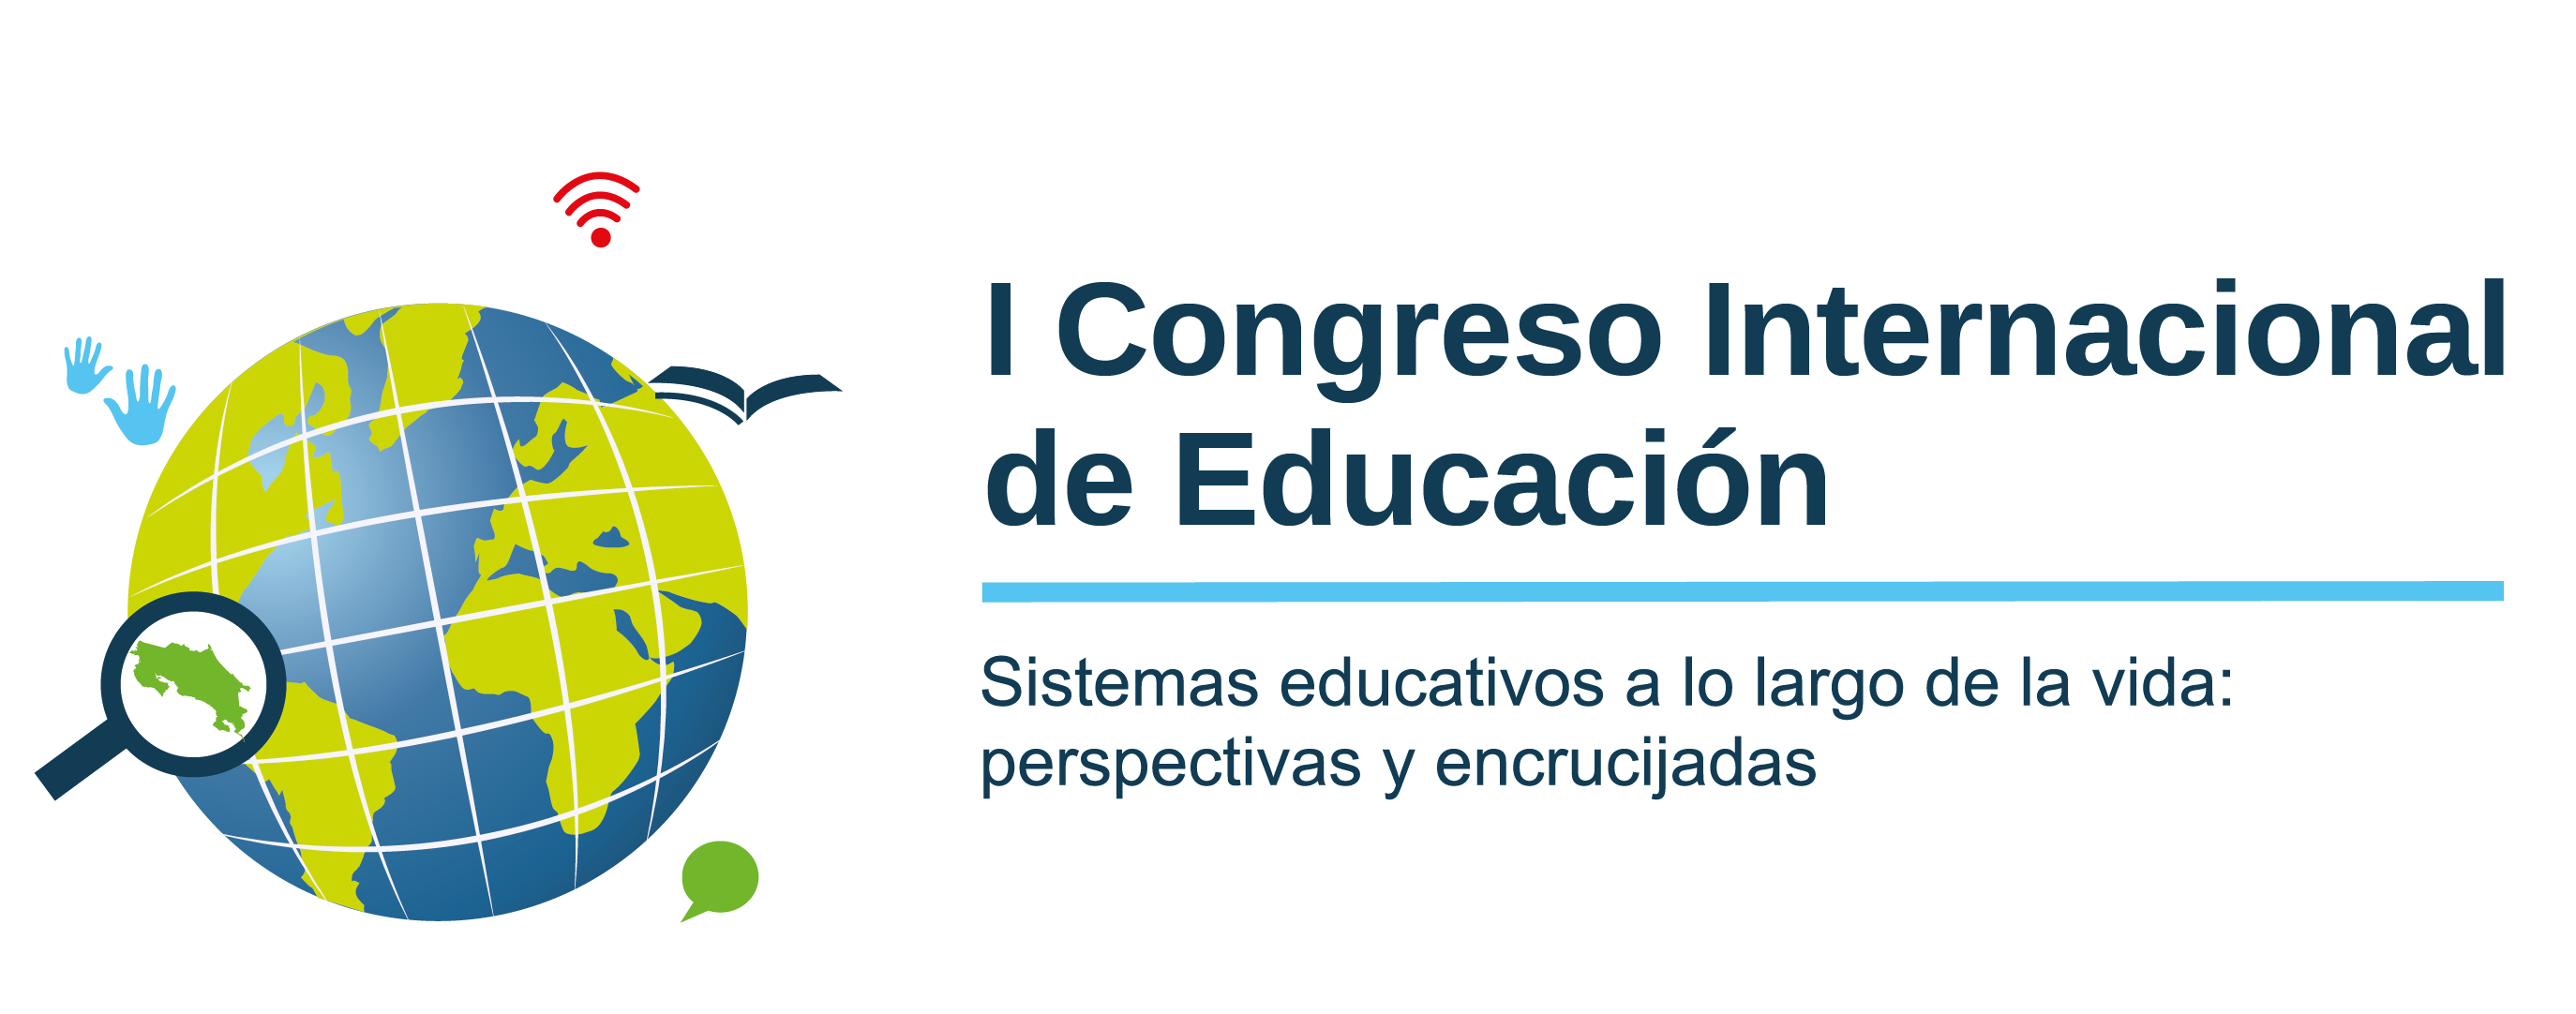 Facultad de Educación organiza el I Congreso Internacional de Educación 2020